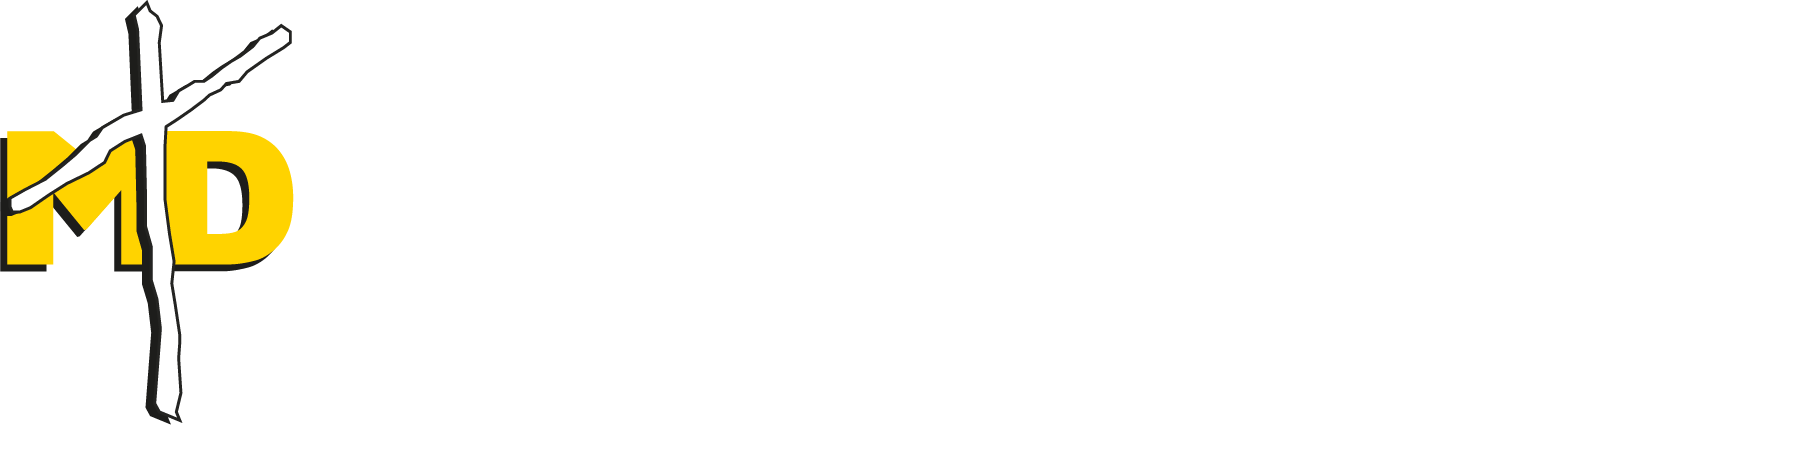 Logo UNIMINUTO